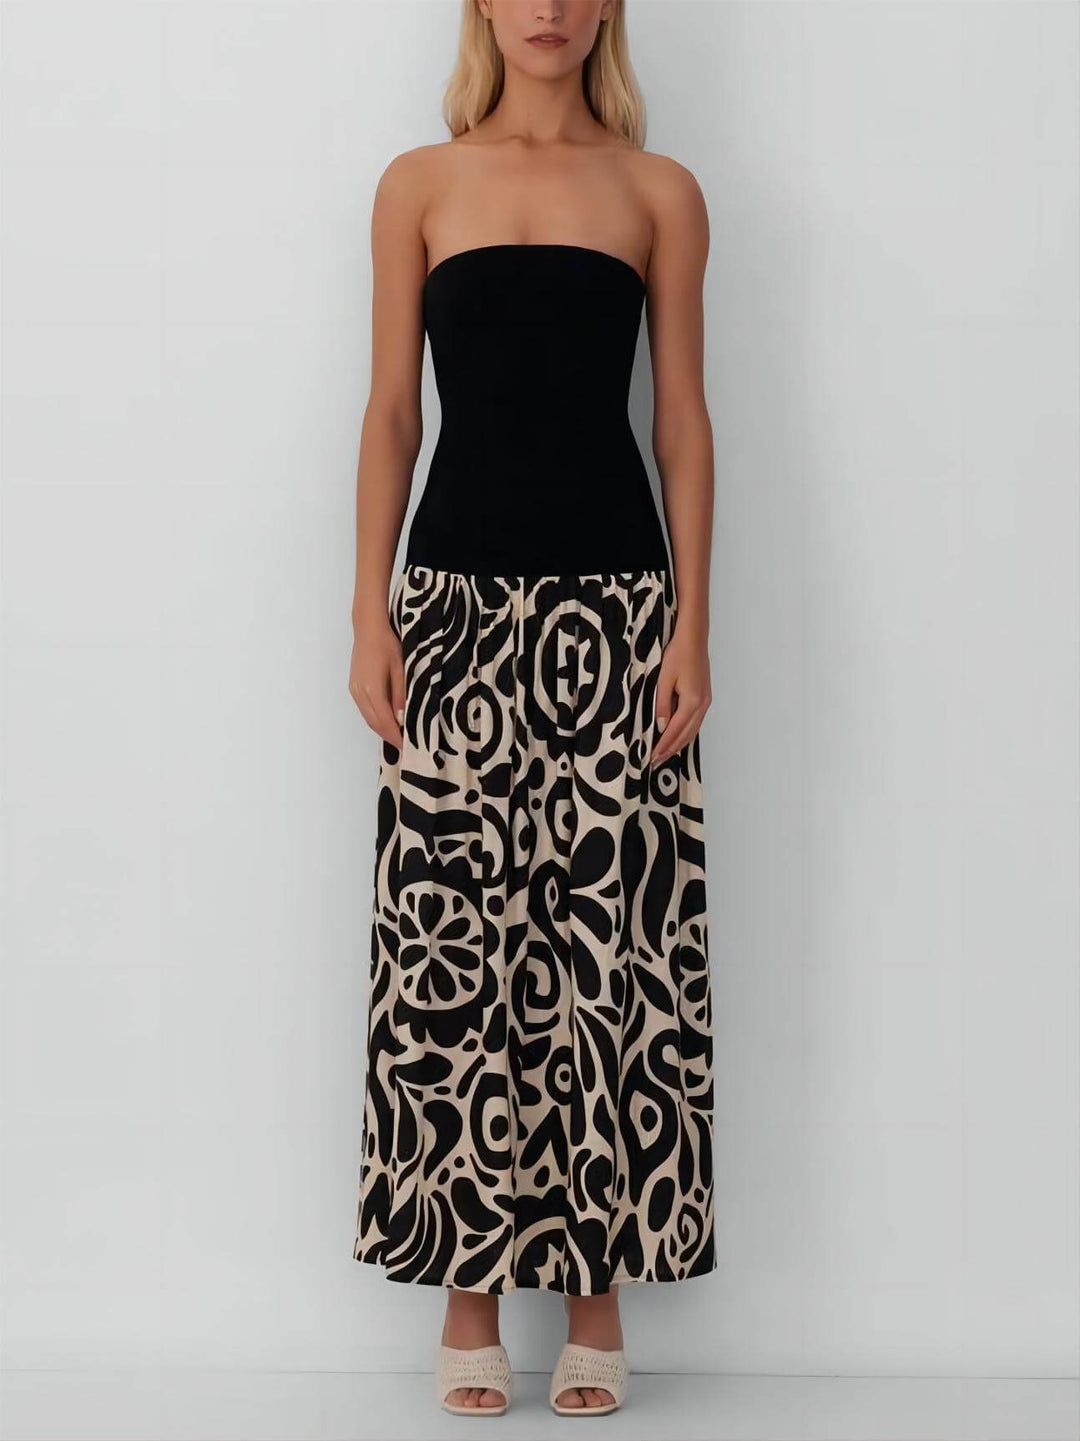 Modna sukienka midi bez ramiączek w kwiatowy print